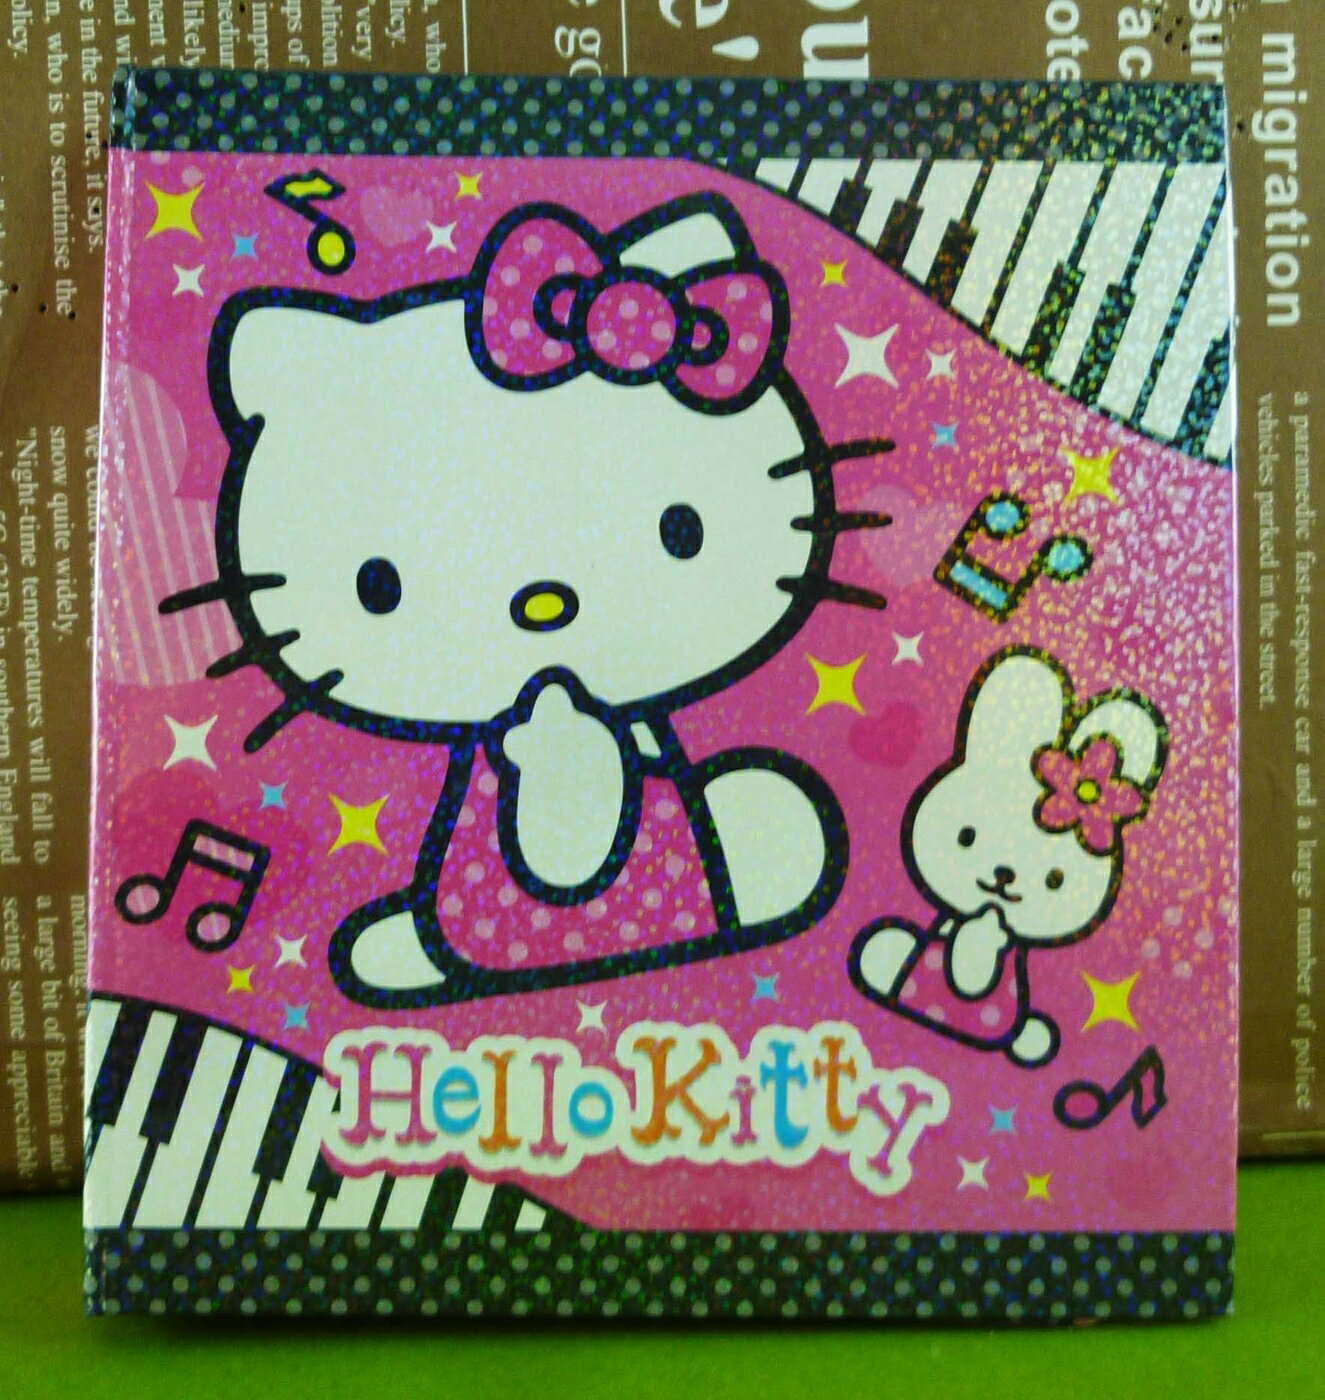 【震撼精品百貨】Hello Kitty 凱蒂貓 六孔記事本 粉音樂【共1款】 震撼日式精品百貨